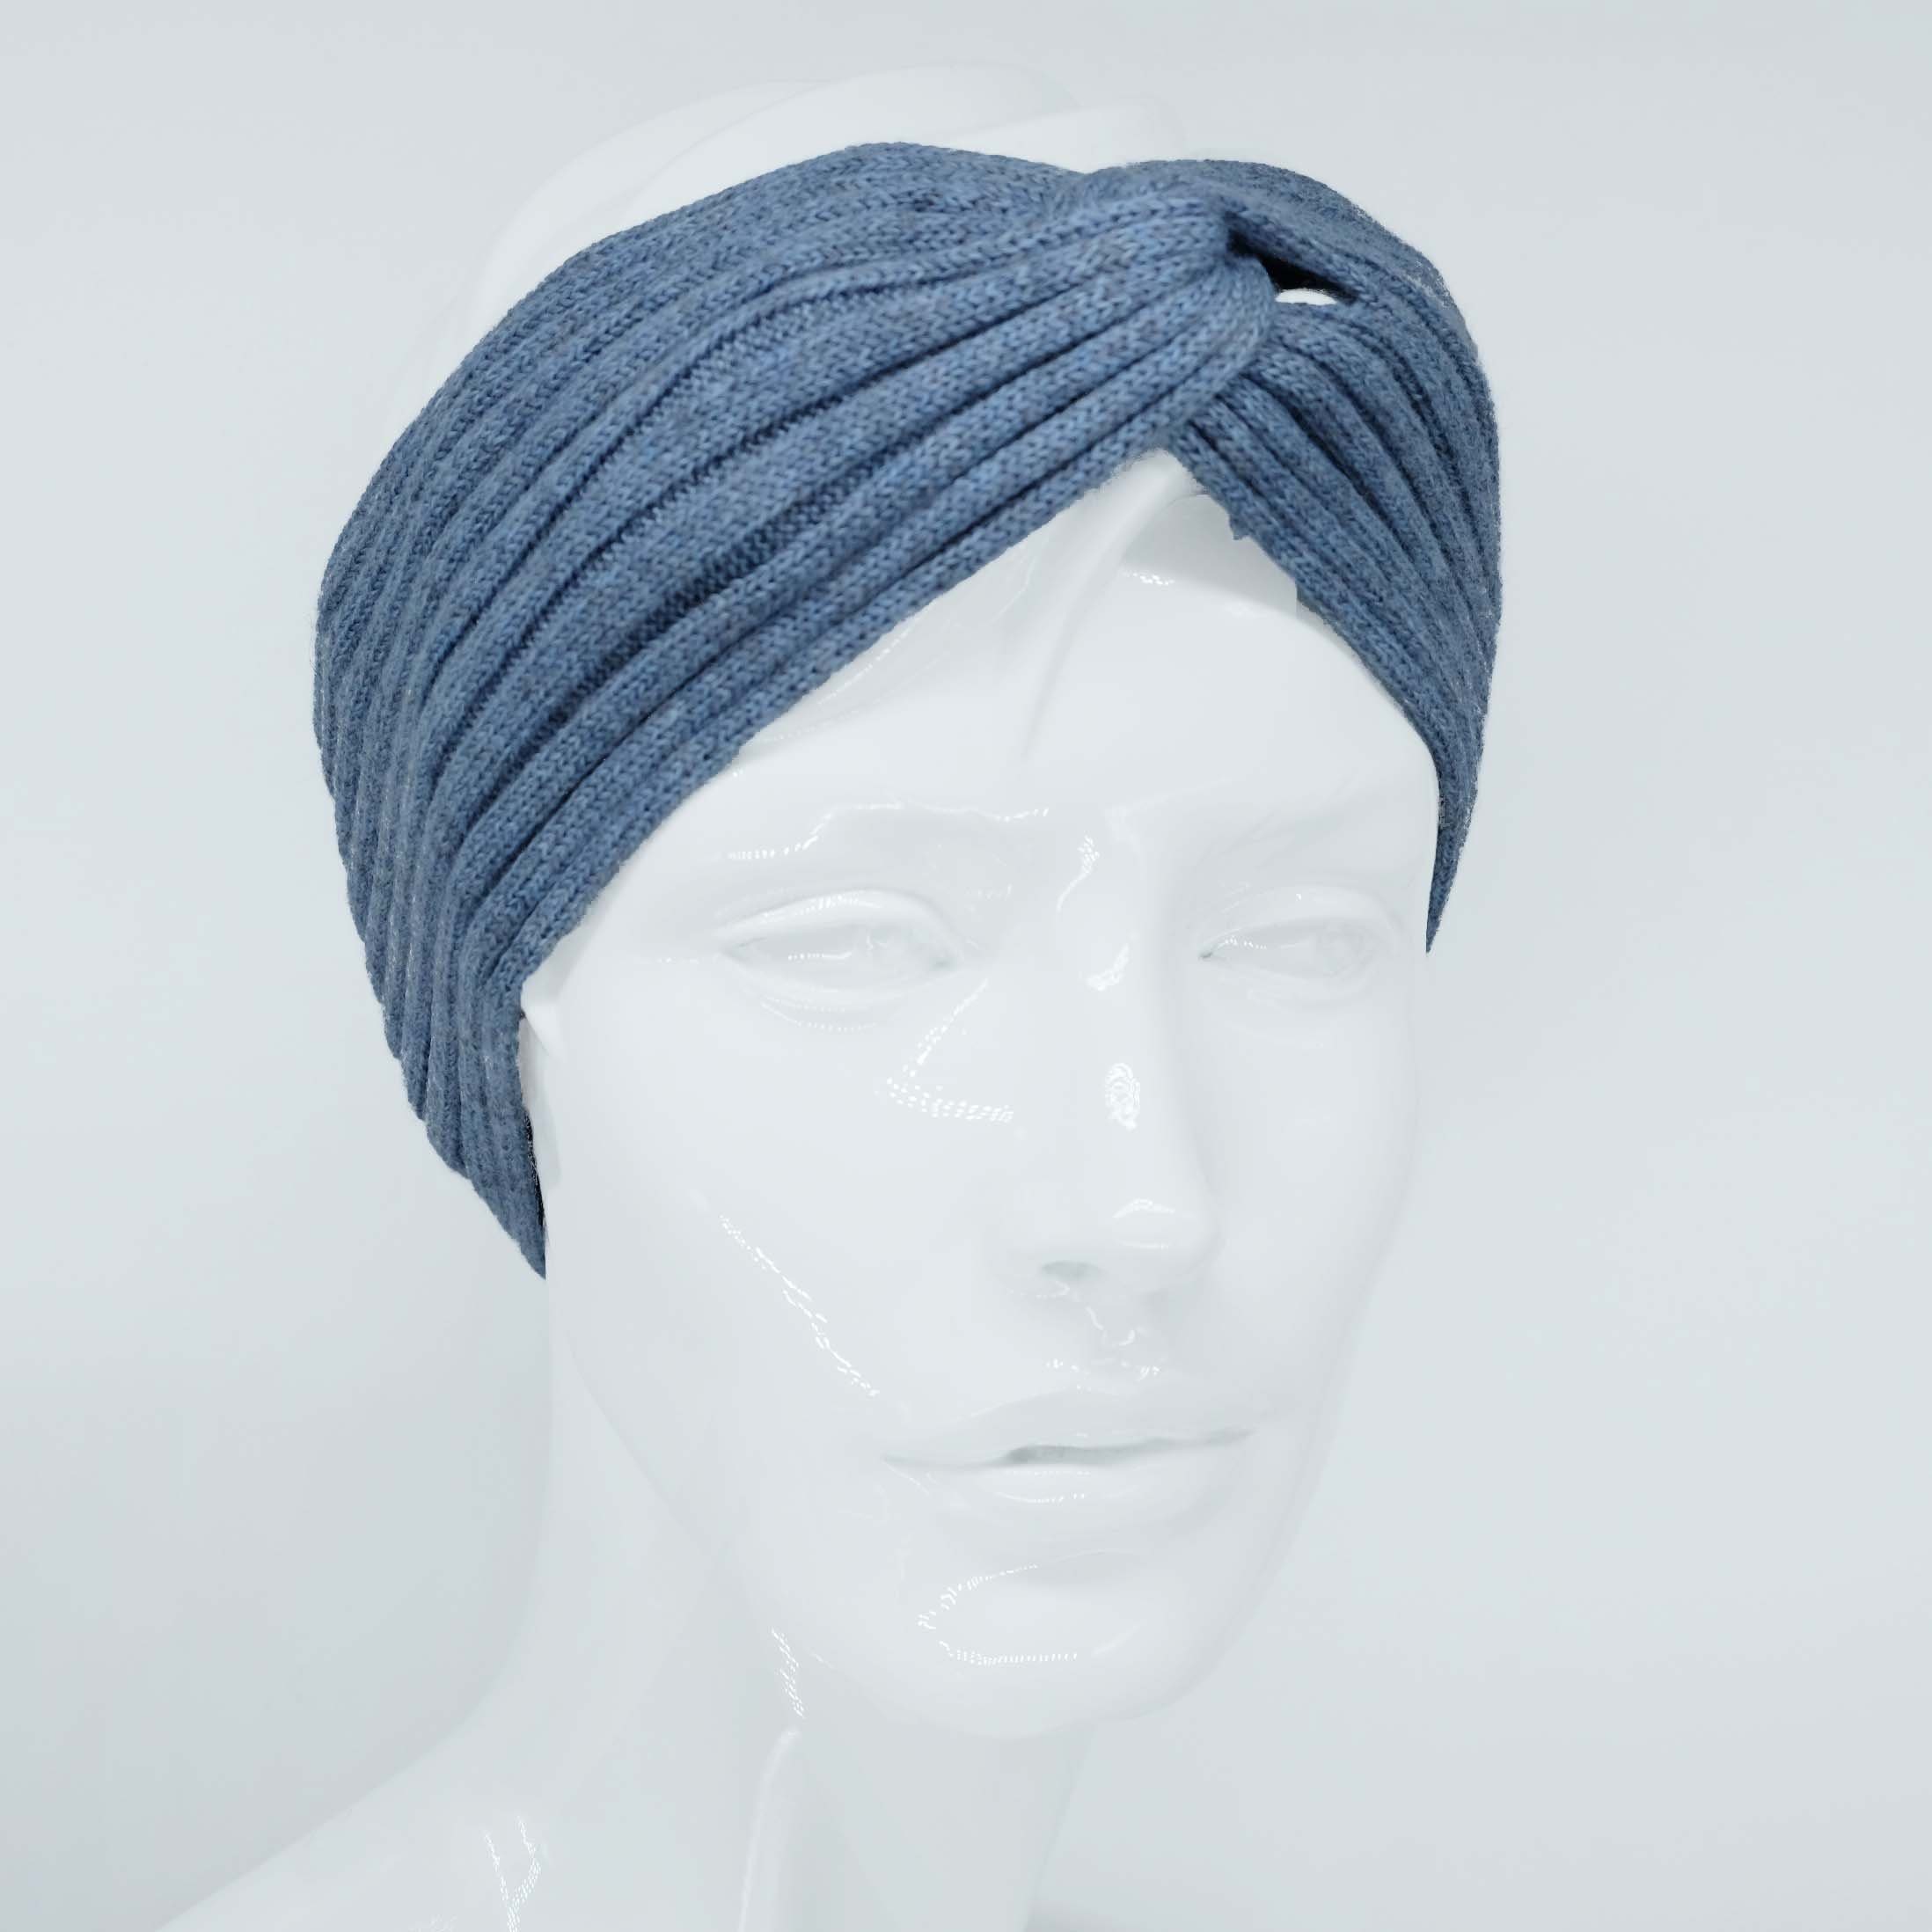 BEAZZ Stirnband Stirnband Ohrenwärmer Damen Winter 100% WOLLE Merino Feinstrick, warm und weich blaugrau meliert